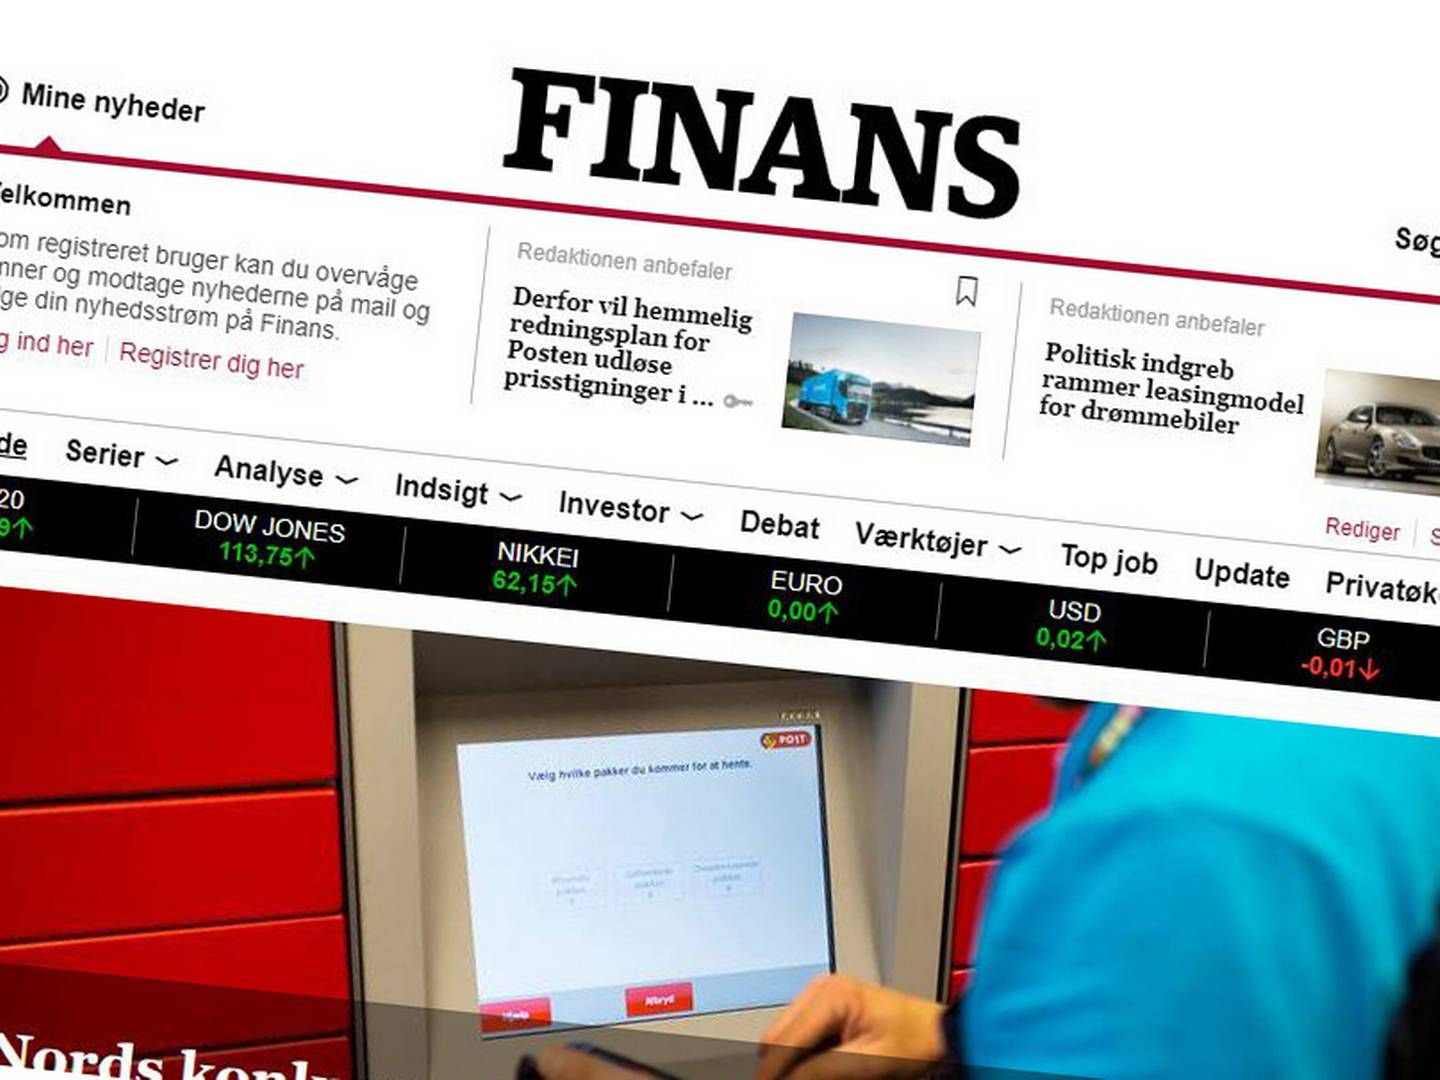 Foto: Screenshot fra finans.dk